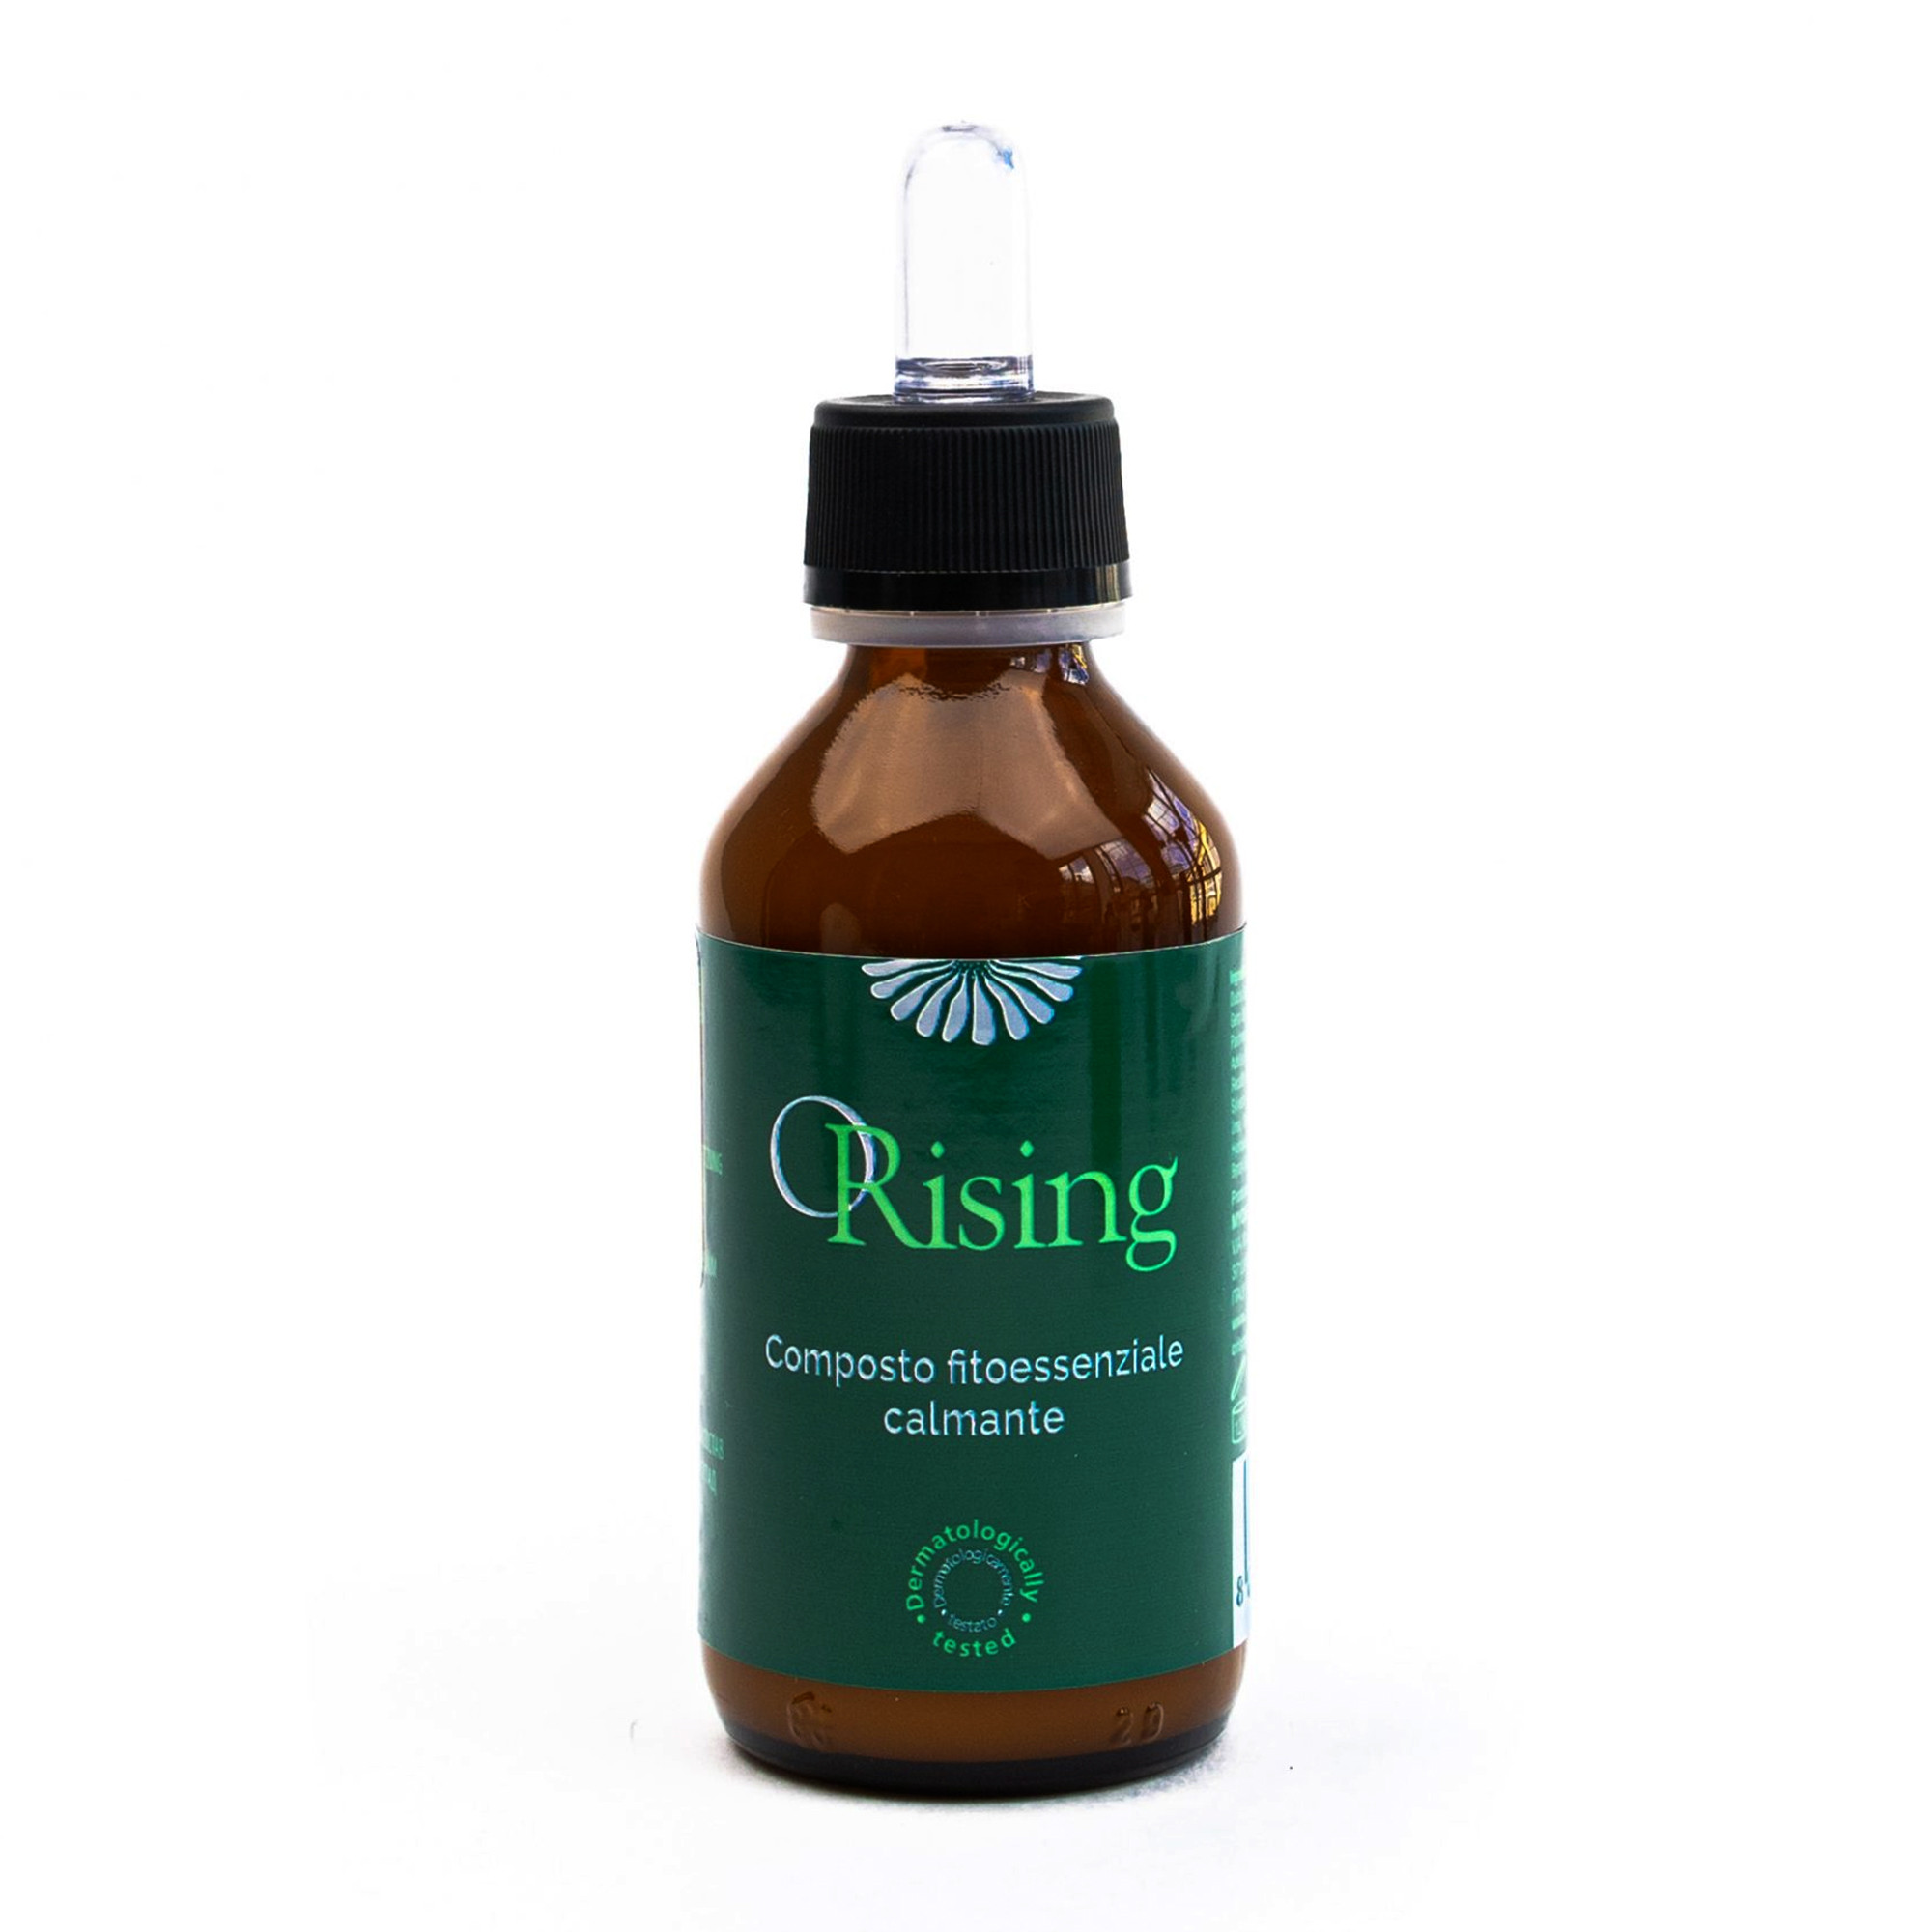 Orising Composto Calmante - Фитоэссенциальное успокаивающее защитное средство